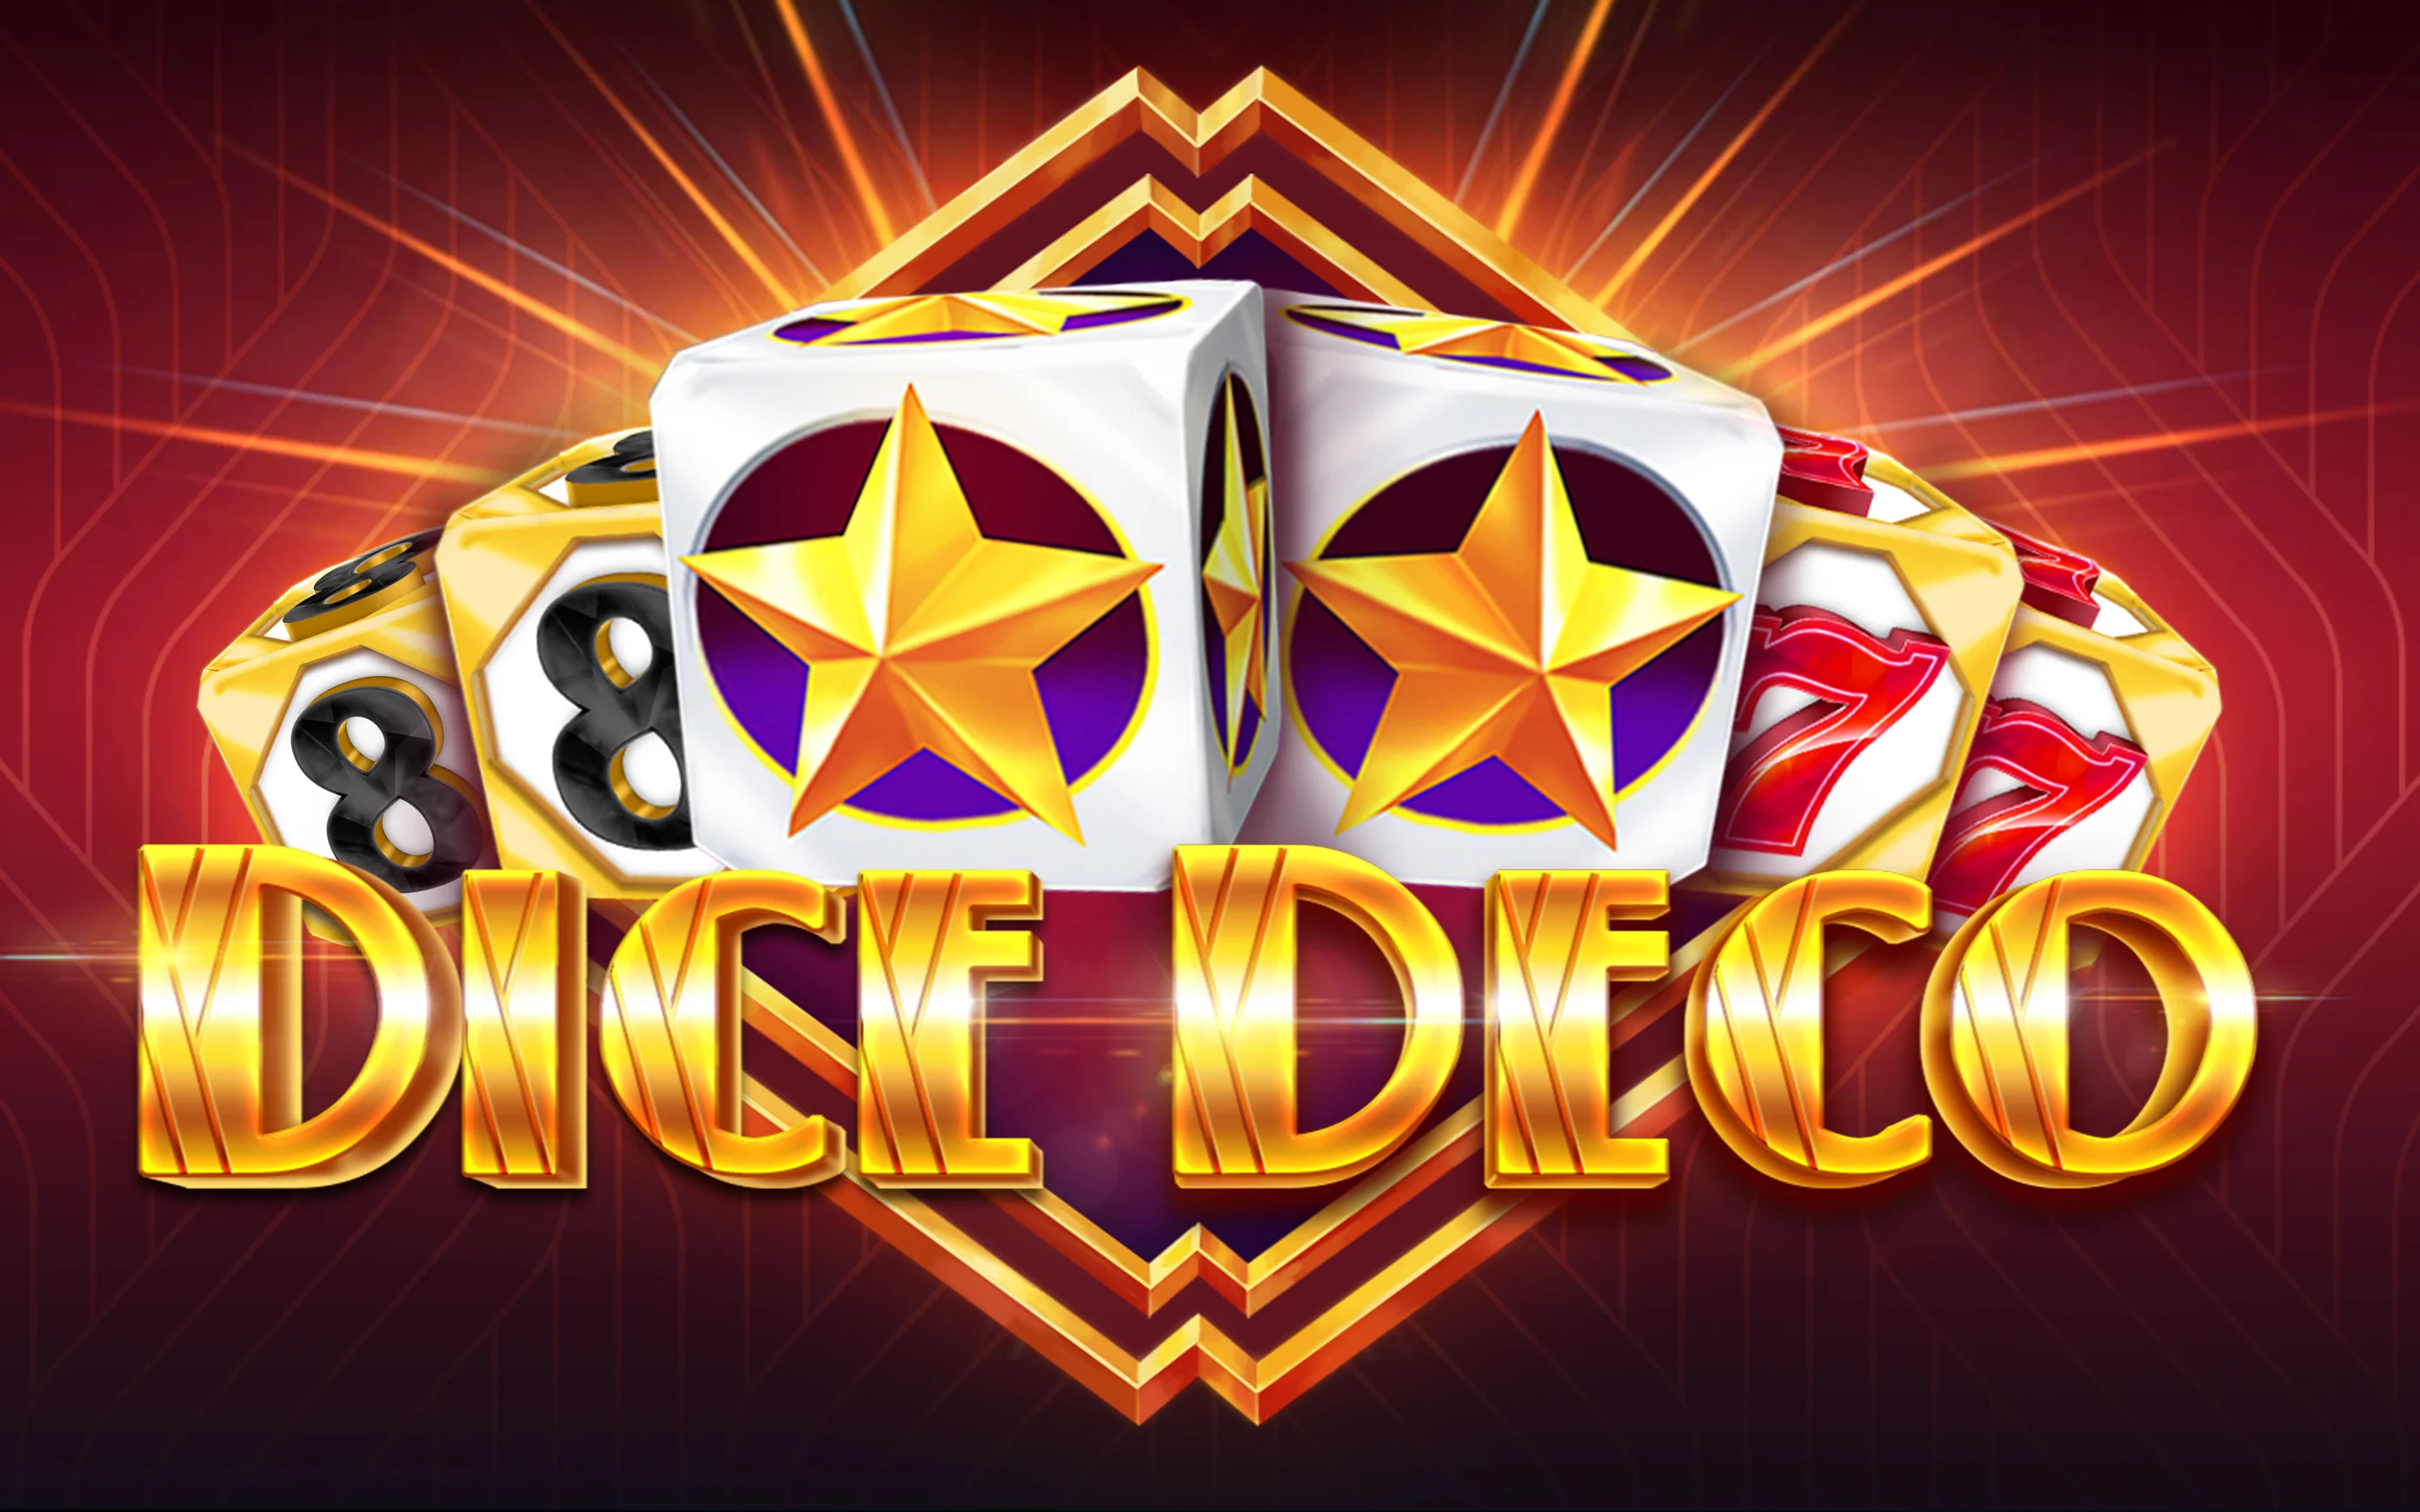 Starcasino.be online casino üzerinden Dice Deco oynayın